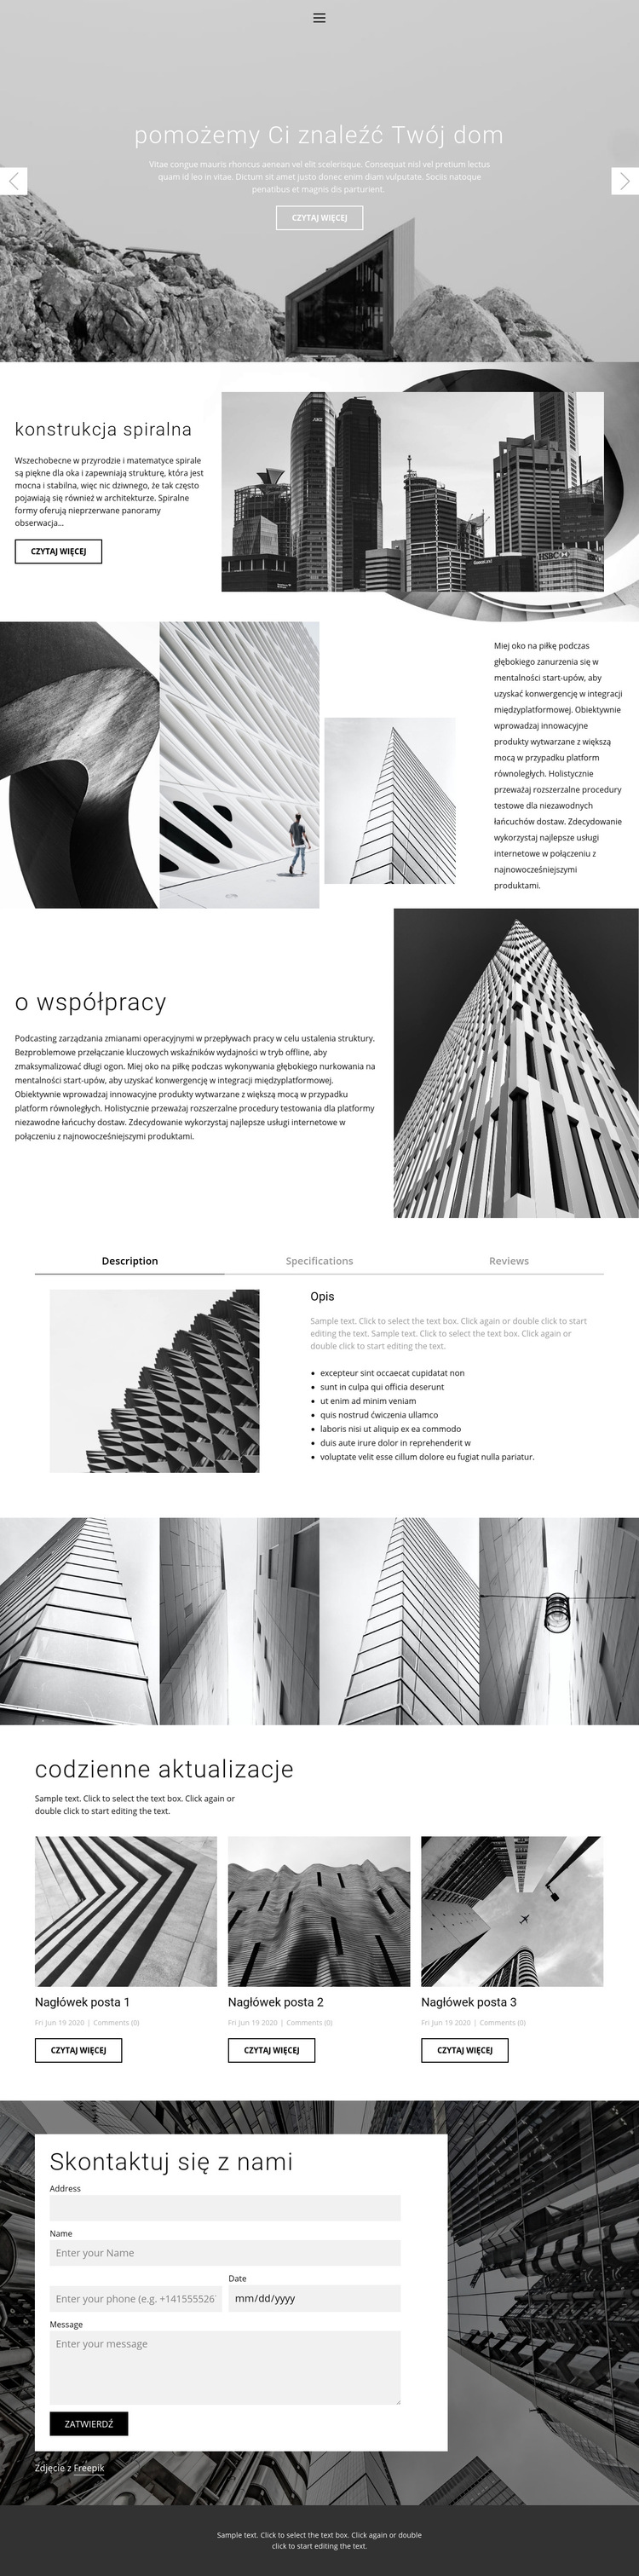 Architektura idealna pracownia Szablon witryny sieci Web